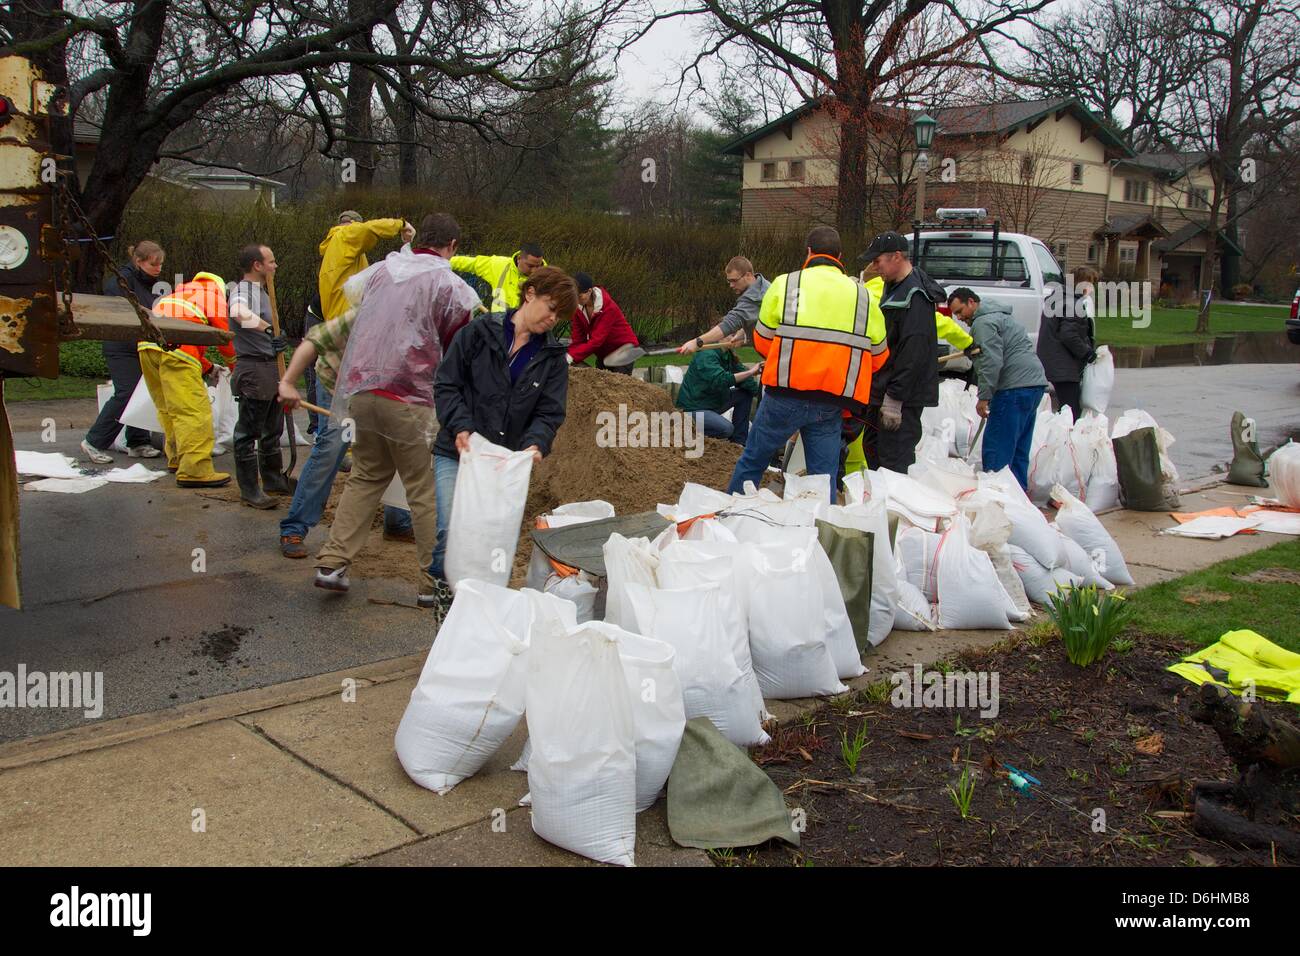 River Forest, Illinois, EE.UU. El 18 de abril de 2013. Los voluntarios llenar sacos de arena en River Oaks Drive adyacente a la Des Plaines River. Se espera que el río a niveles récord de inundaciones debido a las fuertes lluvias. Foto de stock